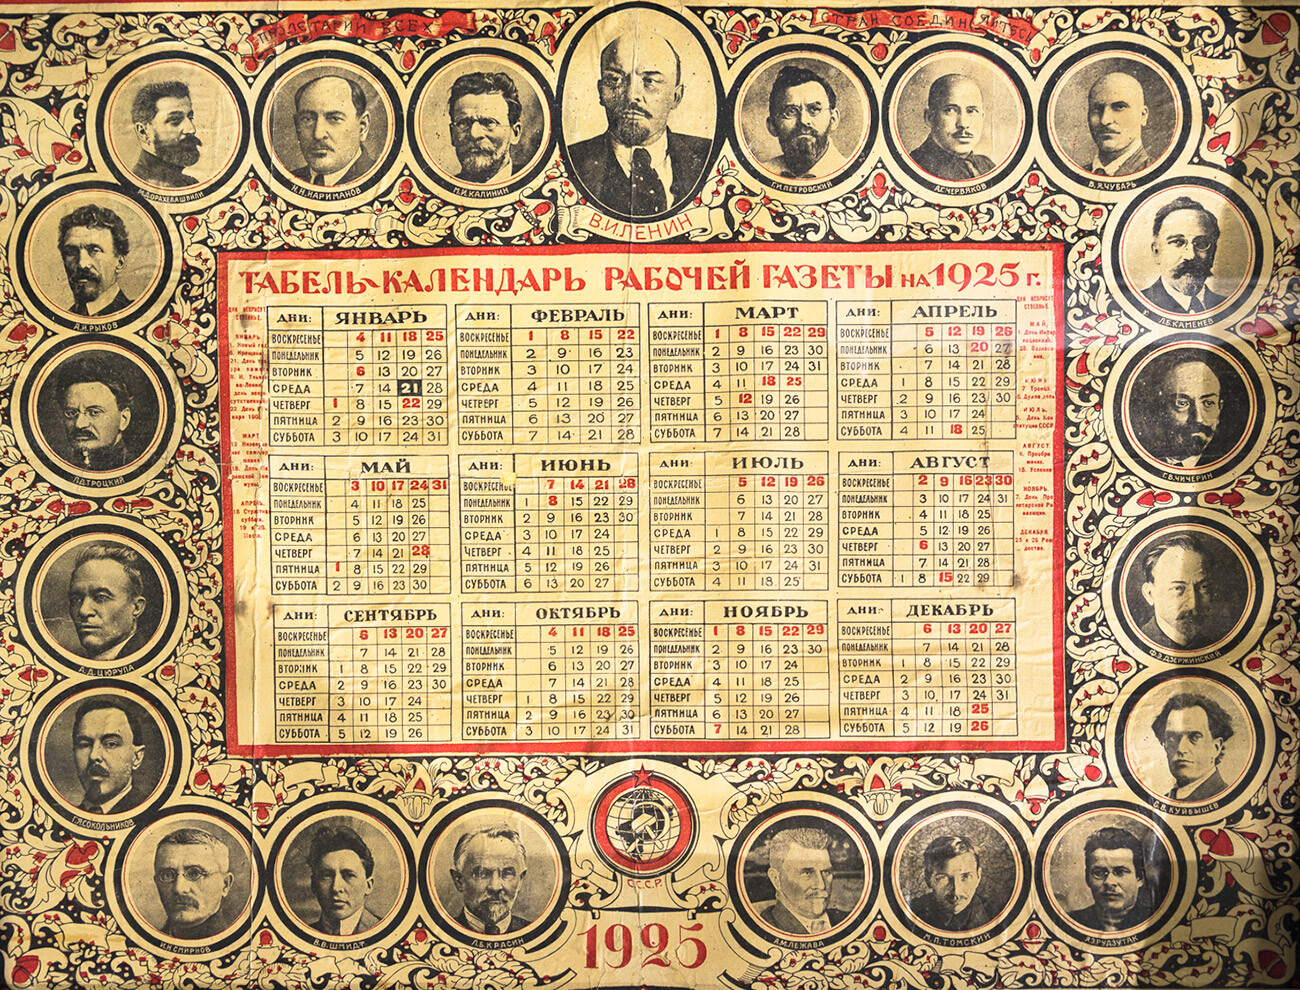 A Soviet calendar for 1925, all weeks still begin on Sunday